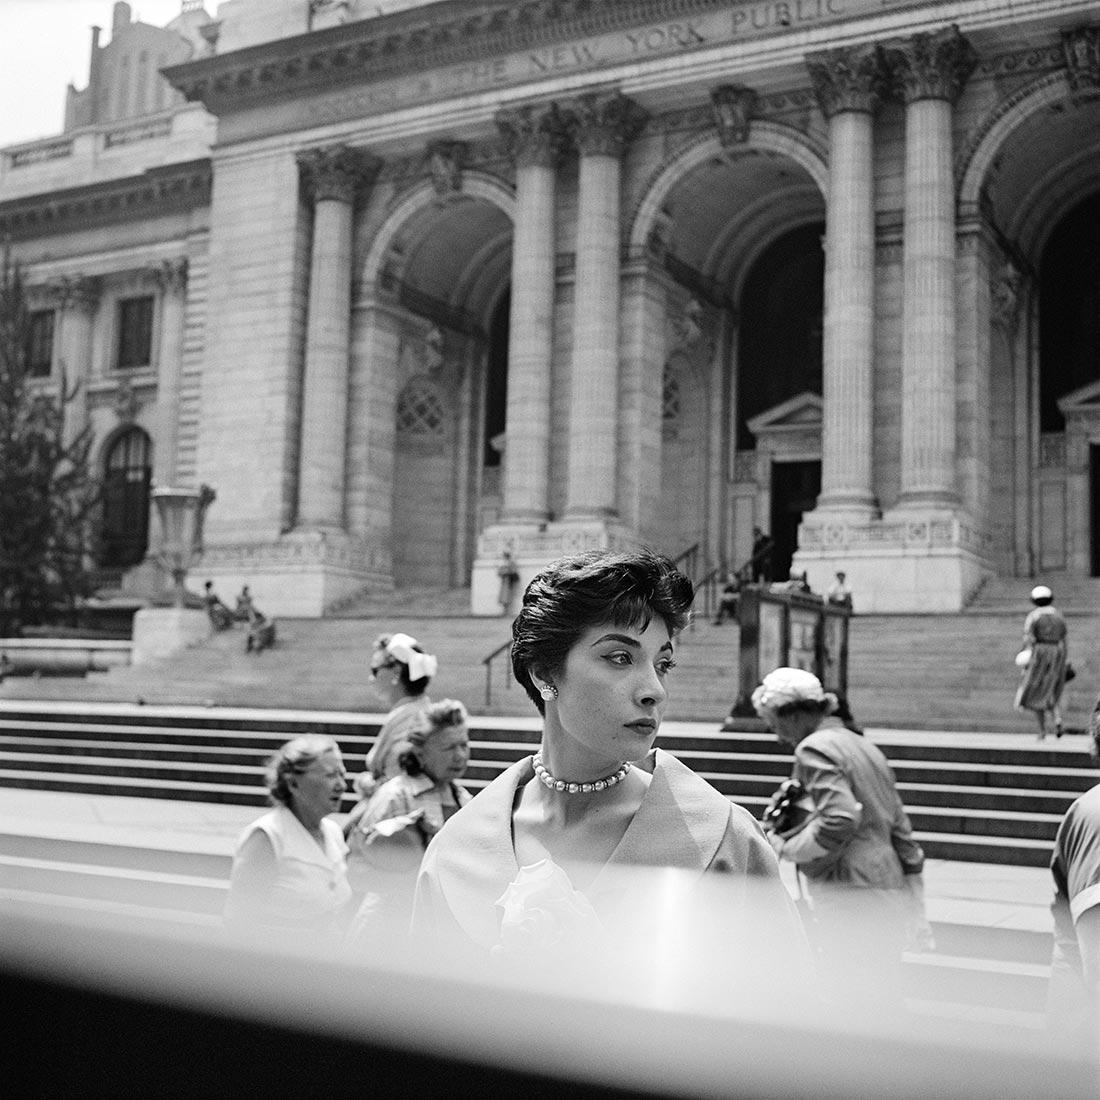 Fotó: Vivian Maier: New York, é.n. © Vivian Maier/Maloof Collection